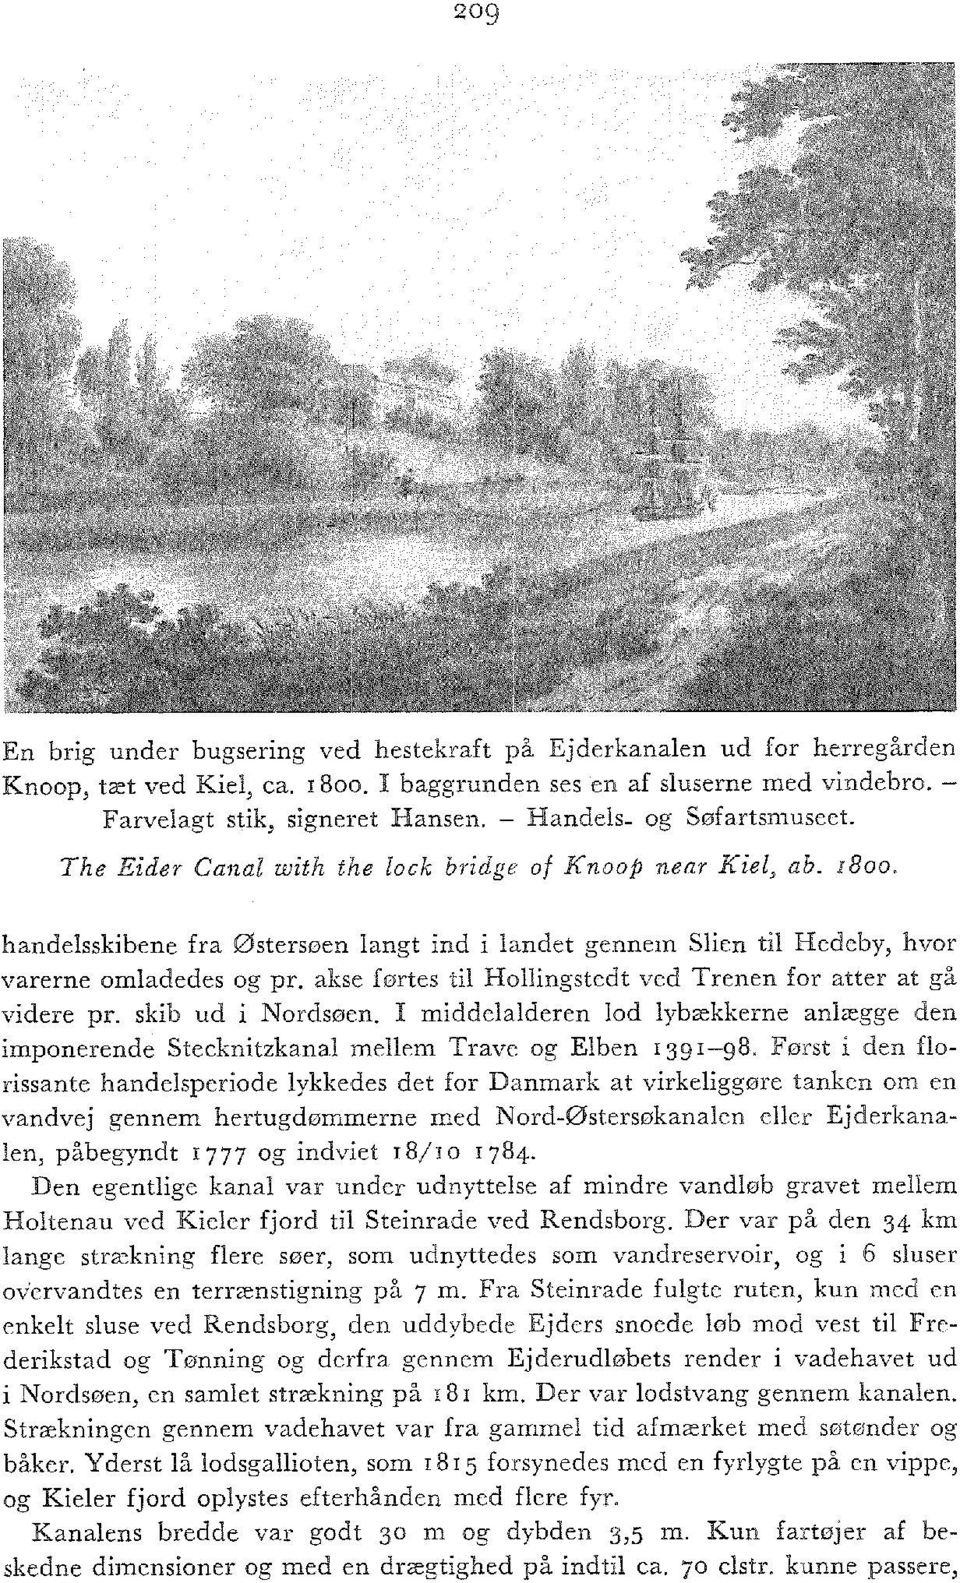 akse førtes til Hollingstedt ved Trenen for atter at gå videre pr. skib ud i Nordsøen. I middelalderen lod lybækkerne anlægge den imponerende Stecknitzkanal mellem Trave og Elben 1391-98.